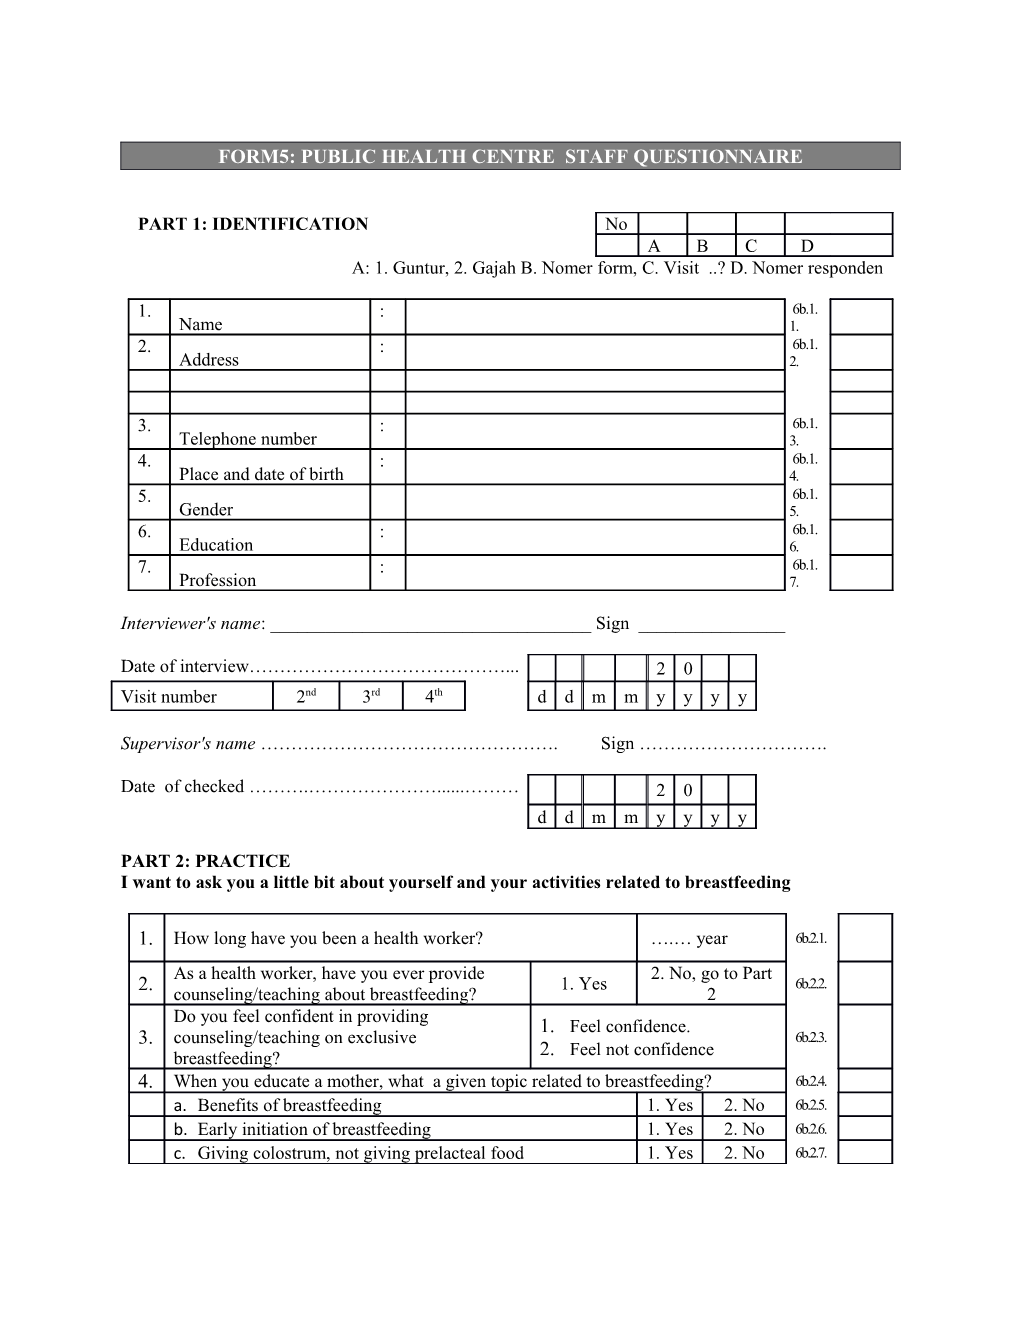 Form5: Public Health Centre Staff Questionnaire